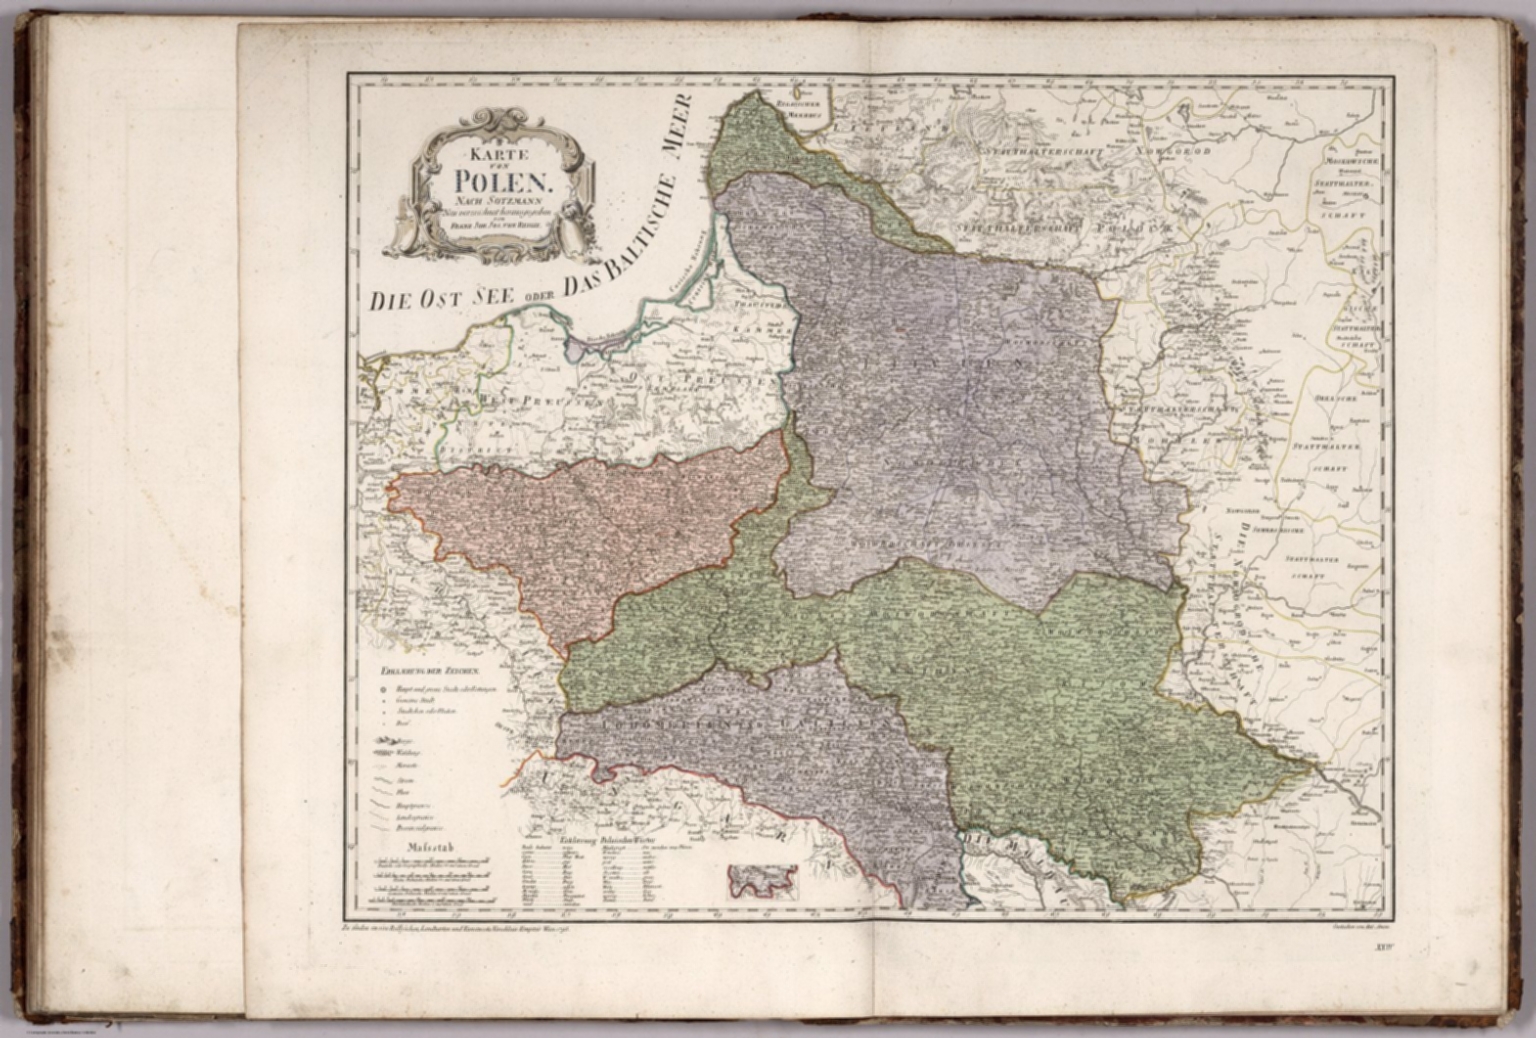 XXIV. Karte von Polen - David Rumsey Historical Map Collection